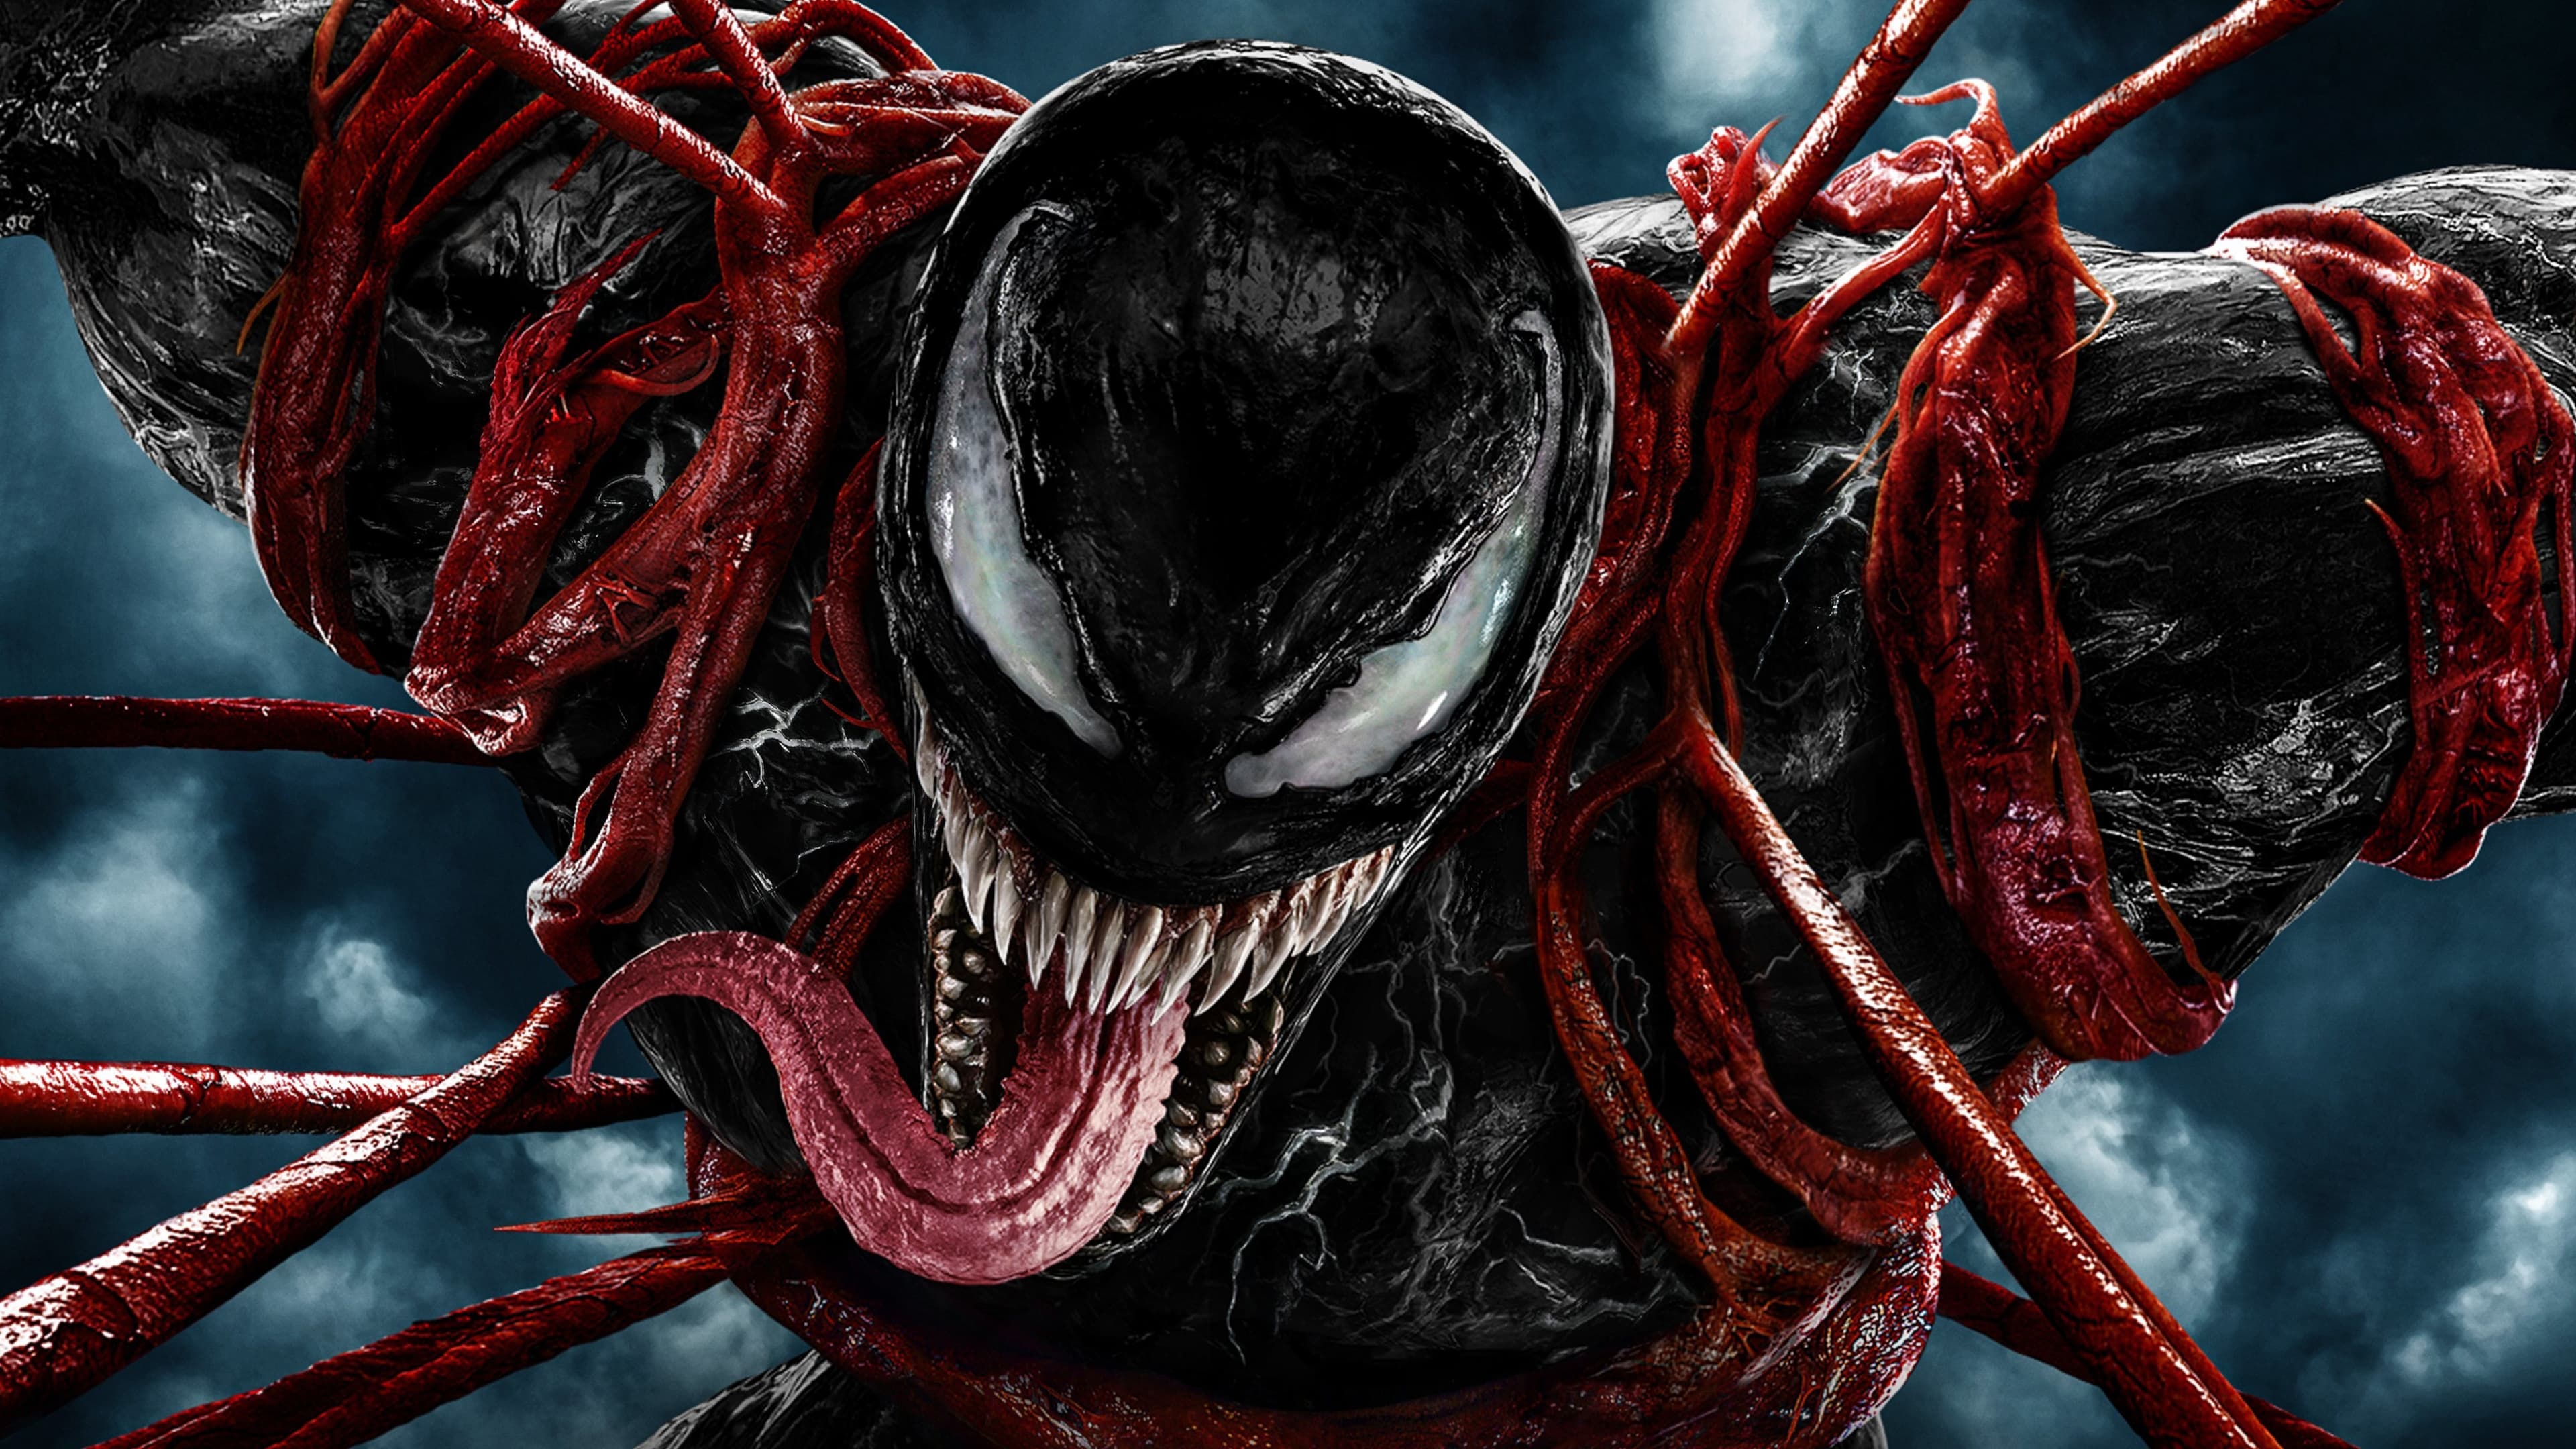 เวน่อม ศึกอสูรแดงเดือด Venom: Let There Be Carnage ออนไลน์โดยสมบูรณ์ในปี 2021